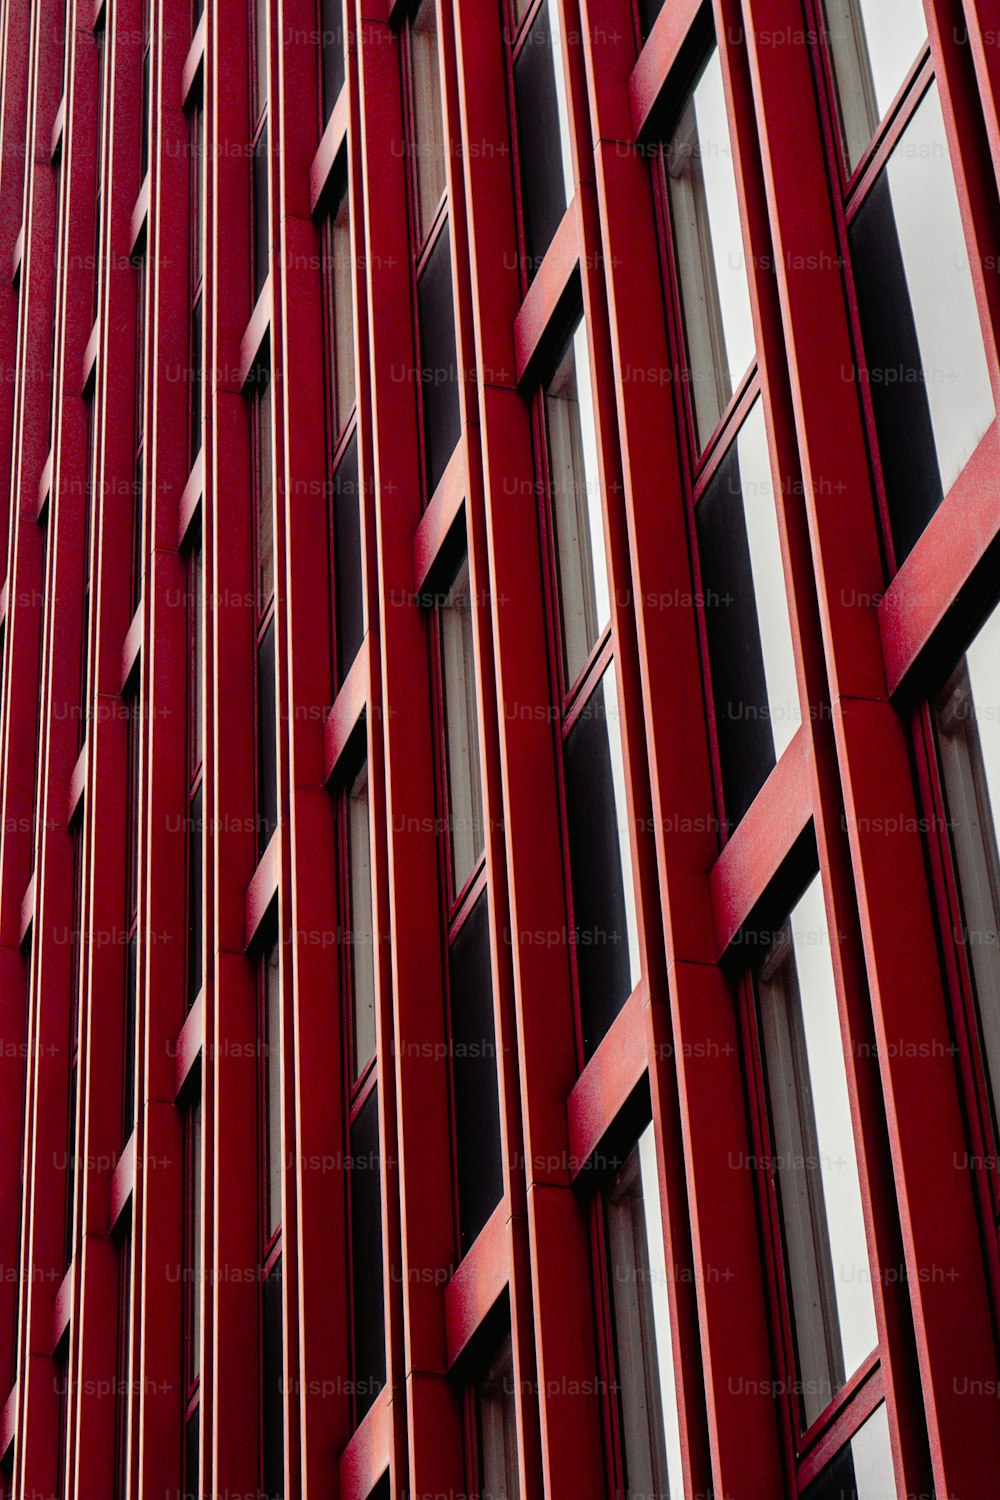 Ein hohes rotes Gebäude mit vielen Fenstern